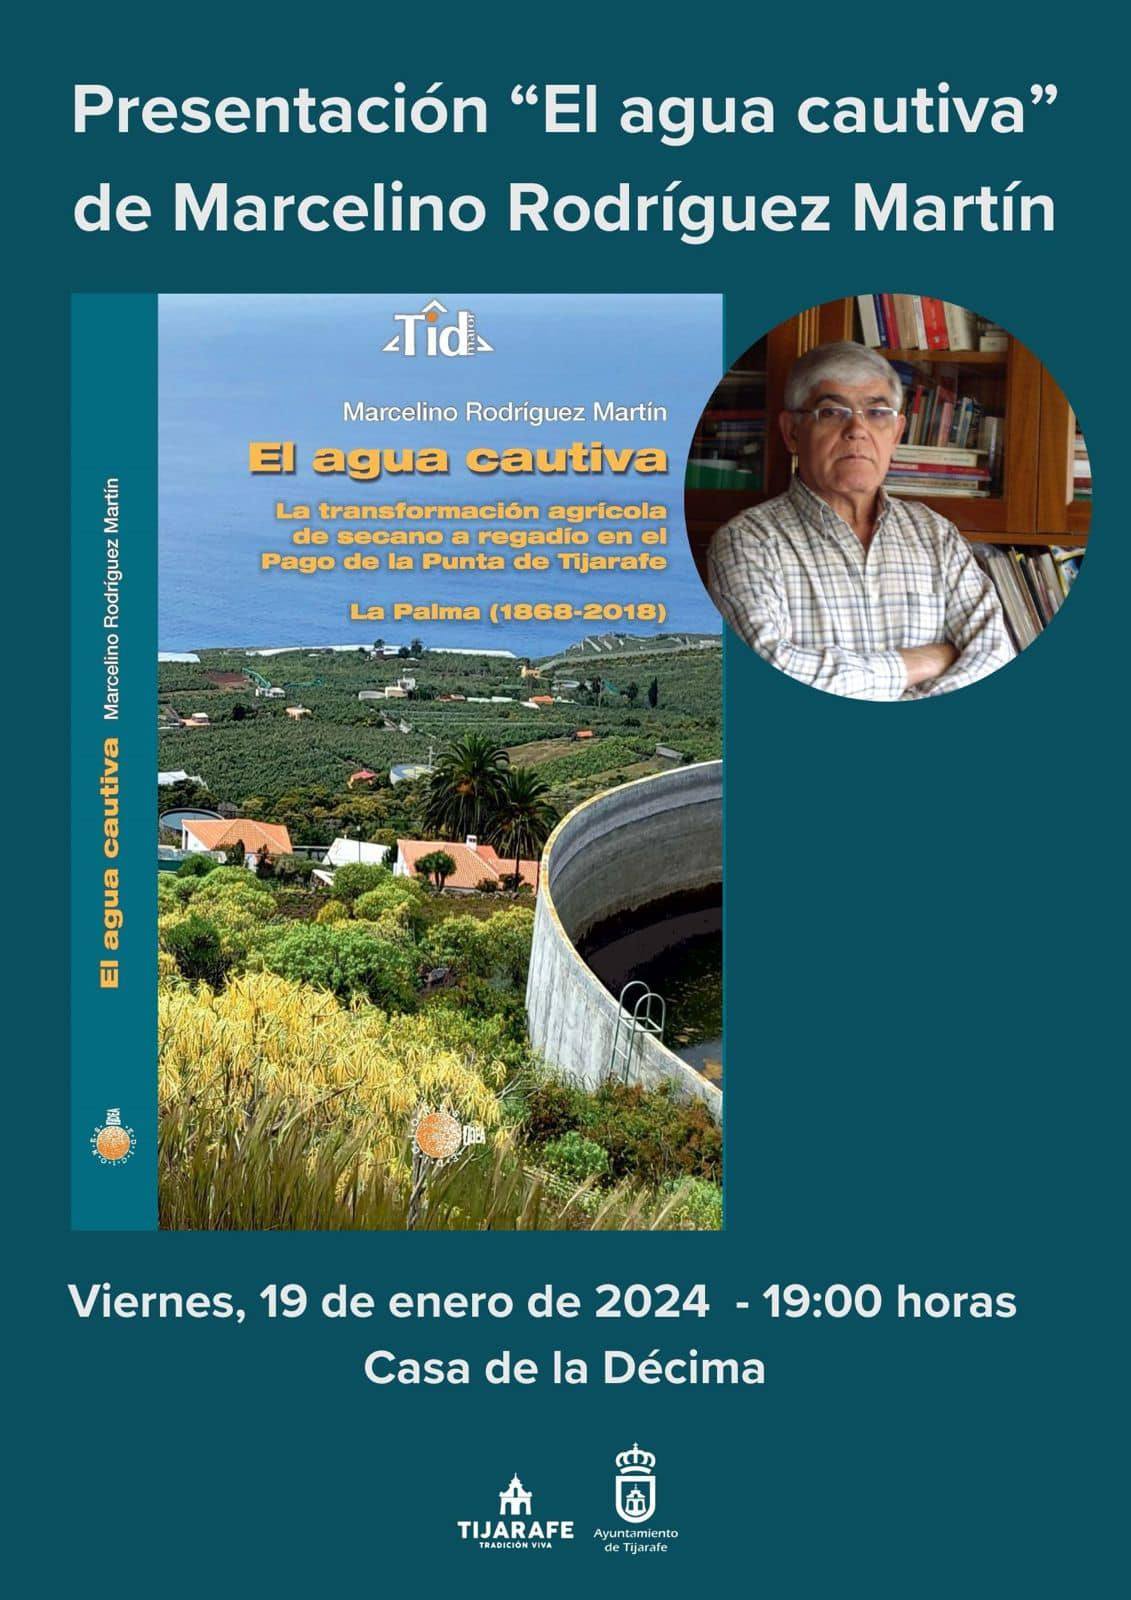 Presentación del libro "El agua cautiva", de Marcelino Rodríguez Martín